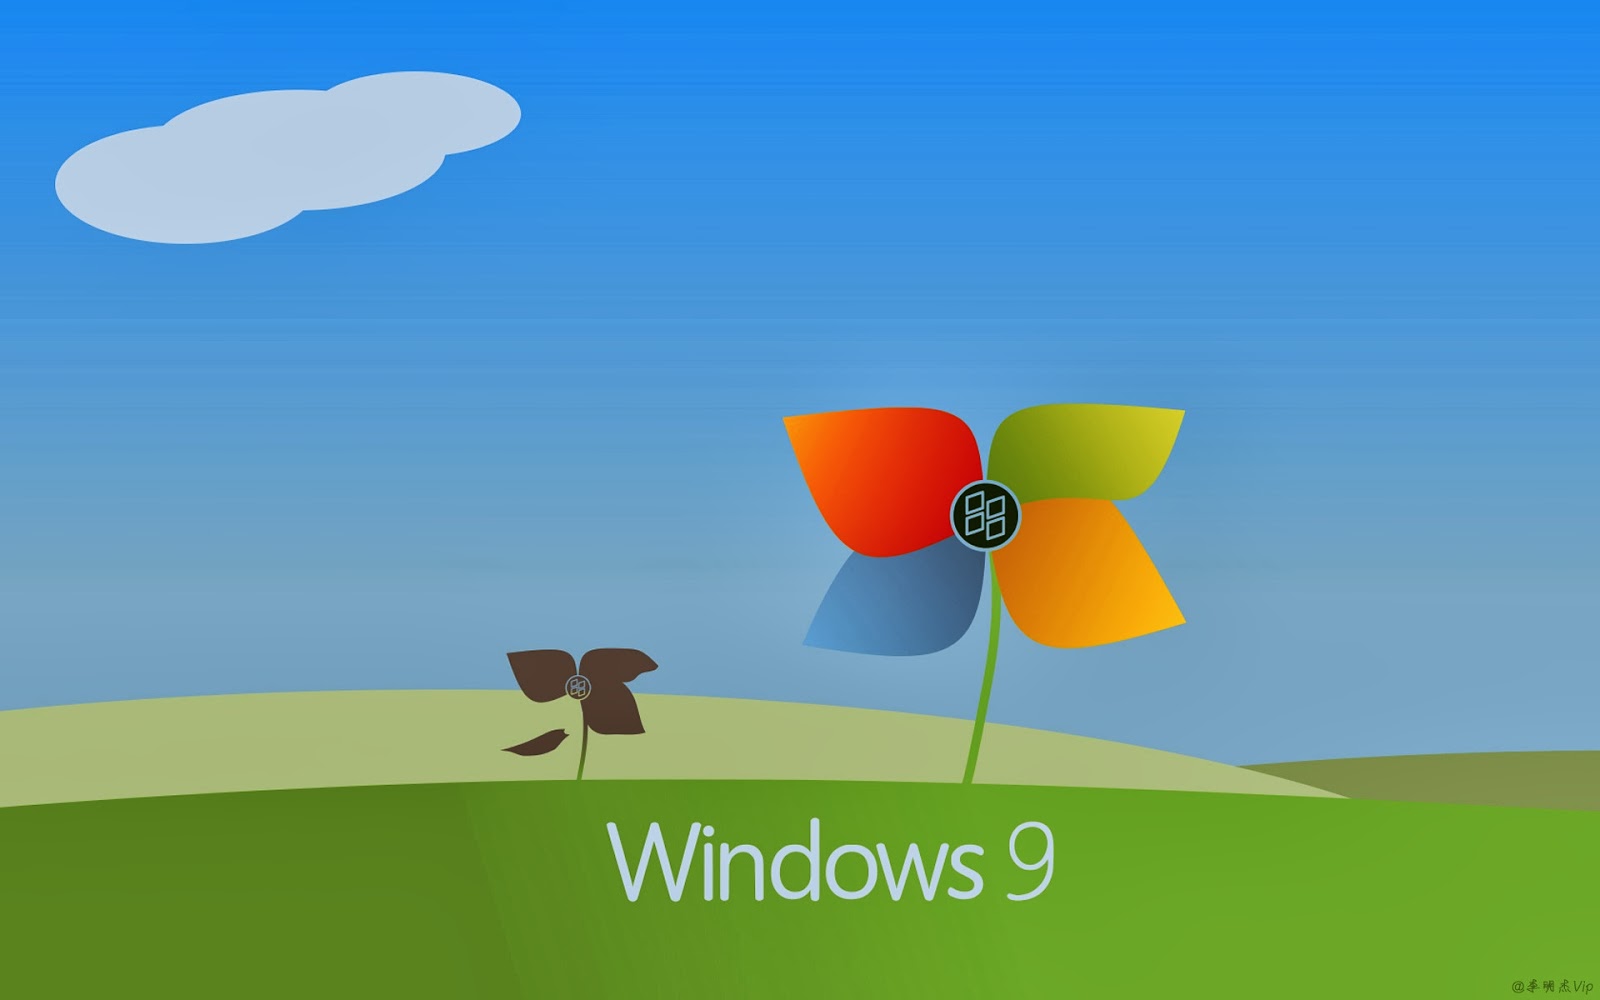 Hình nền mặc định của Windows 9: Hãy khám phá Windows 9 với những hình nền mặc định đẹp. Sự khác biệt lớn giữa Windows 8 và Windows 9 chính là những hình nền được thiết kế tuyệt đẹp, mang đến cảm giác mới mẻ và hứng khởi cho người dùng. Hãy trải nghiệm và cập nhật ngay hình nền mới nhất cho máy tính của bạn.